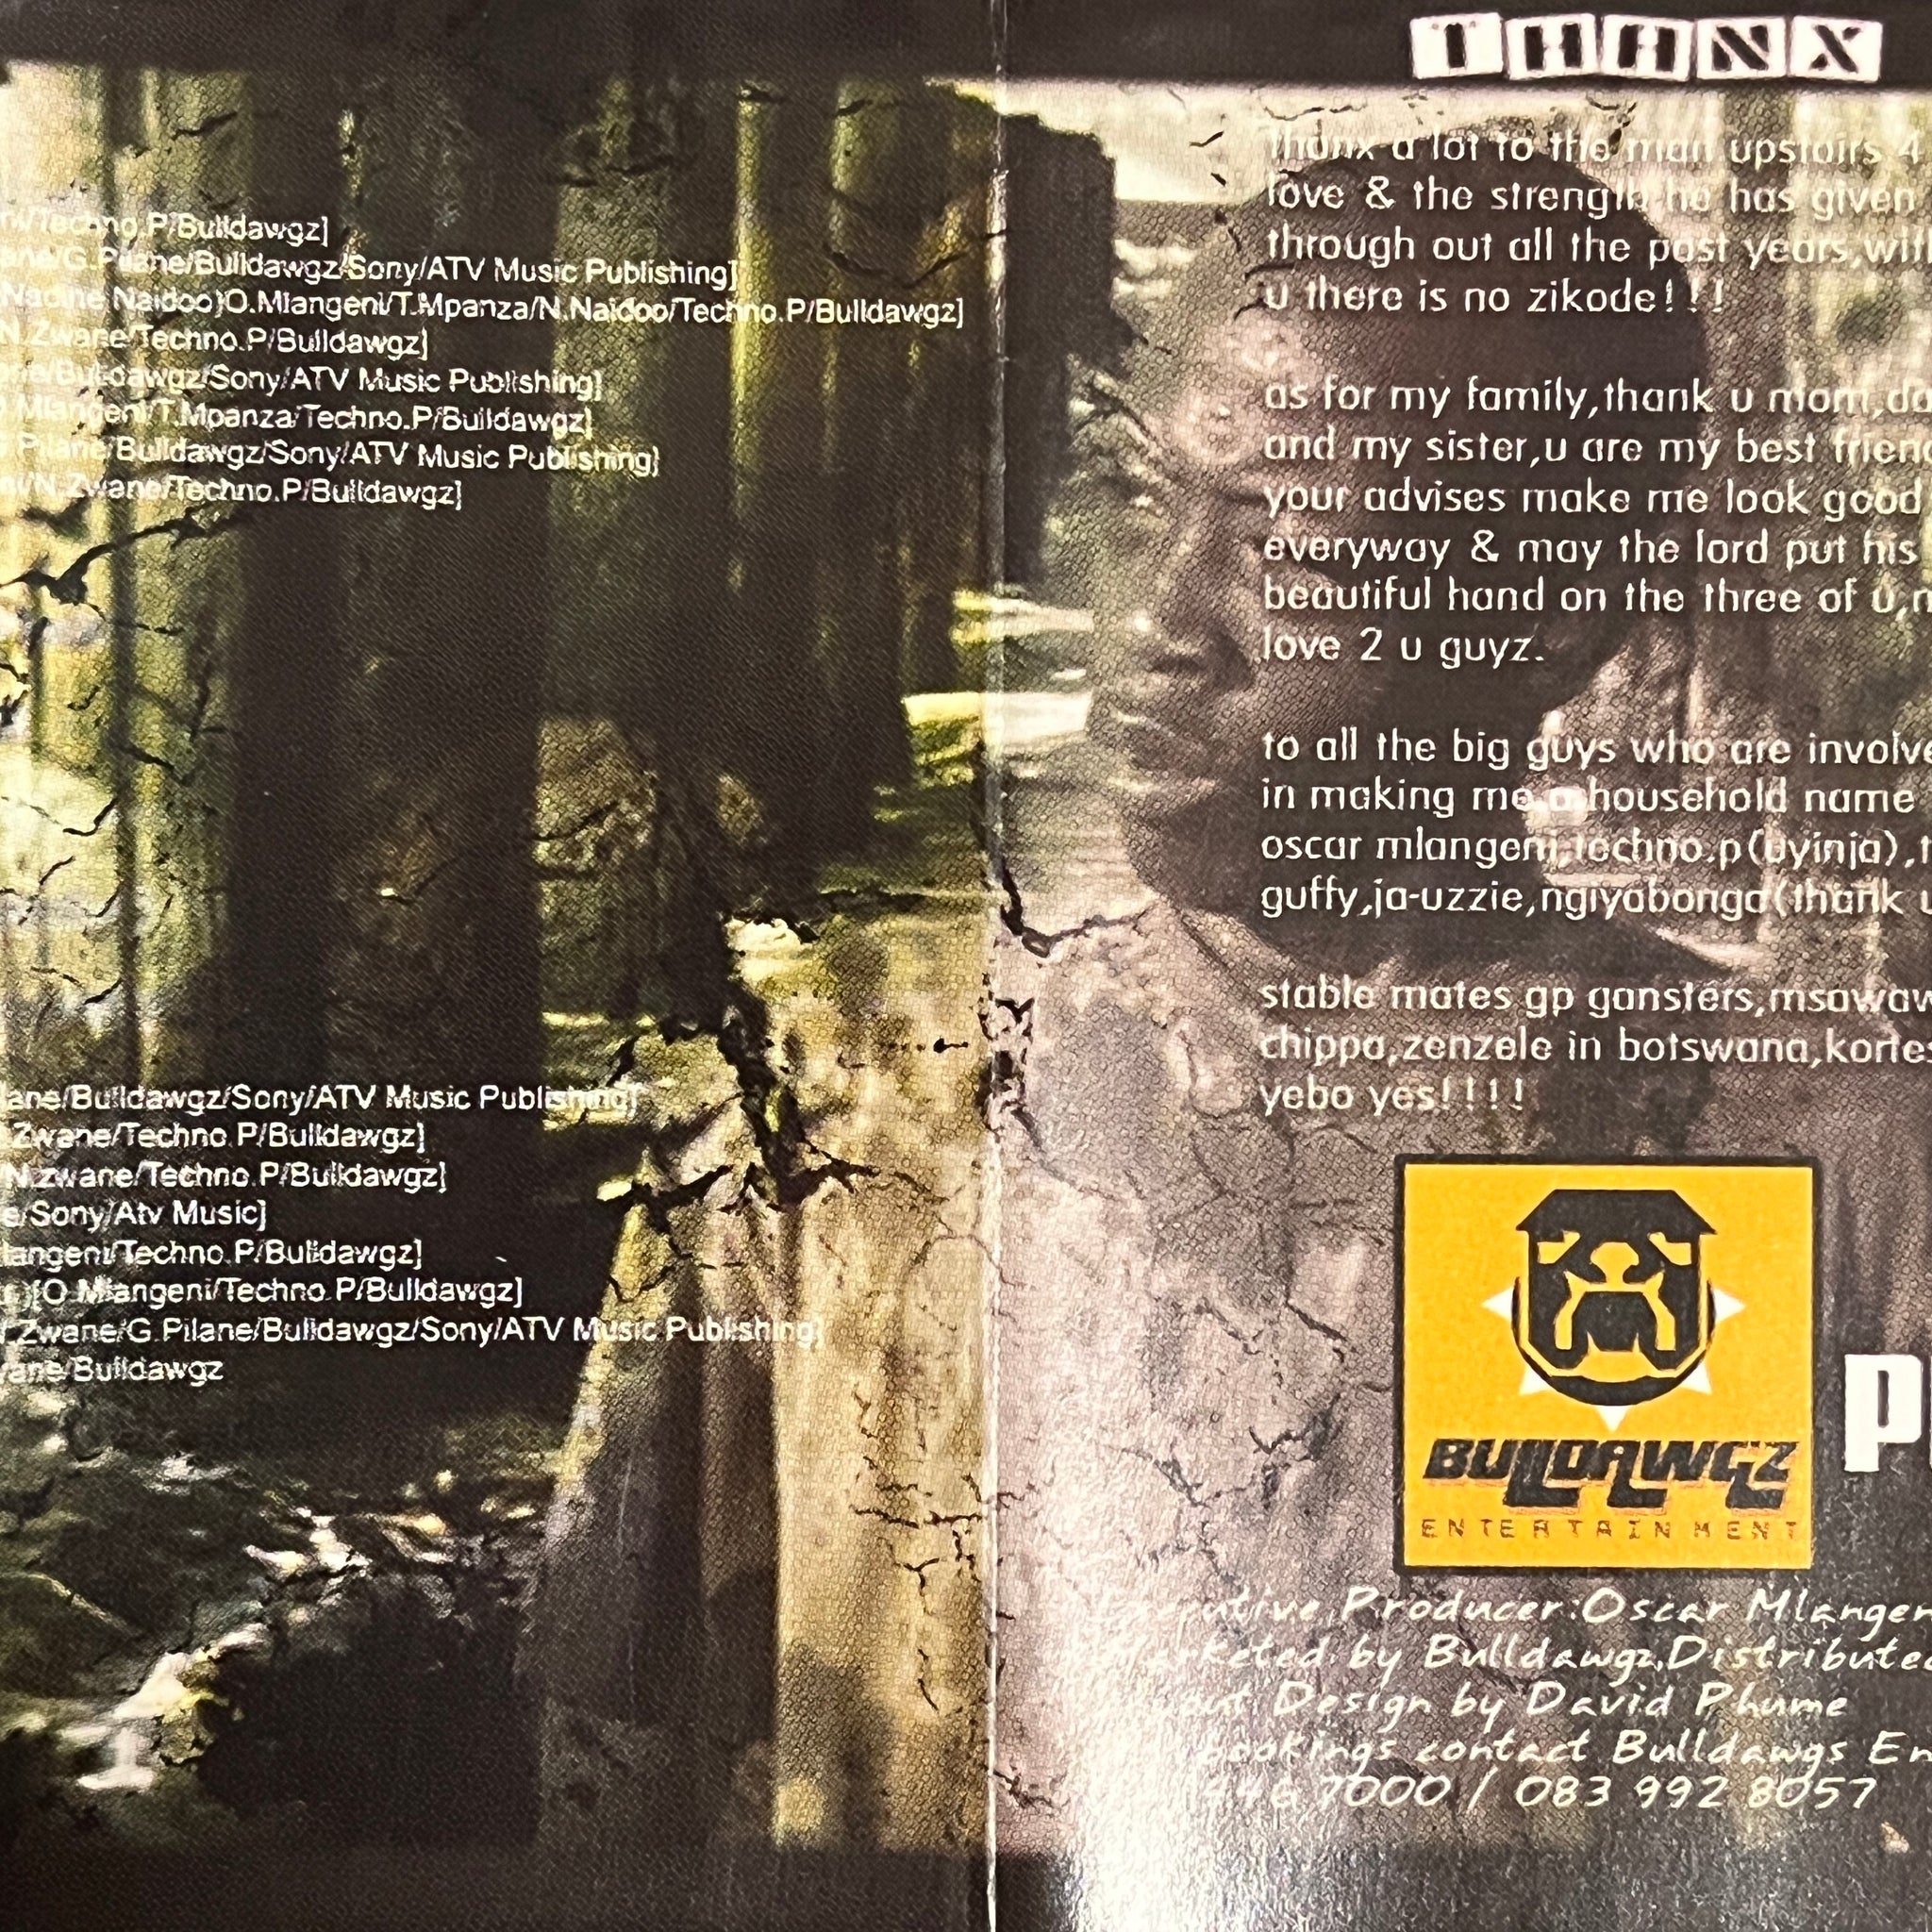 Mzambiya – Zikode (cassette)